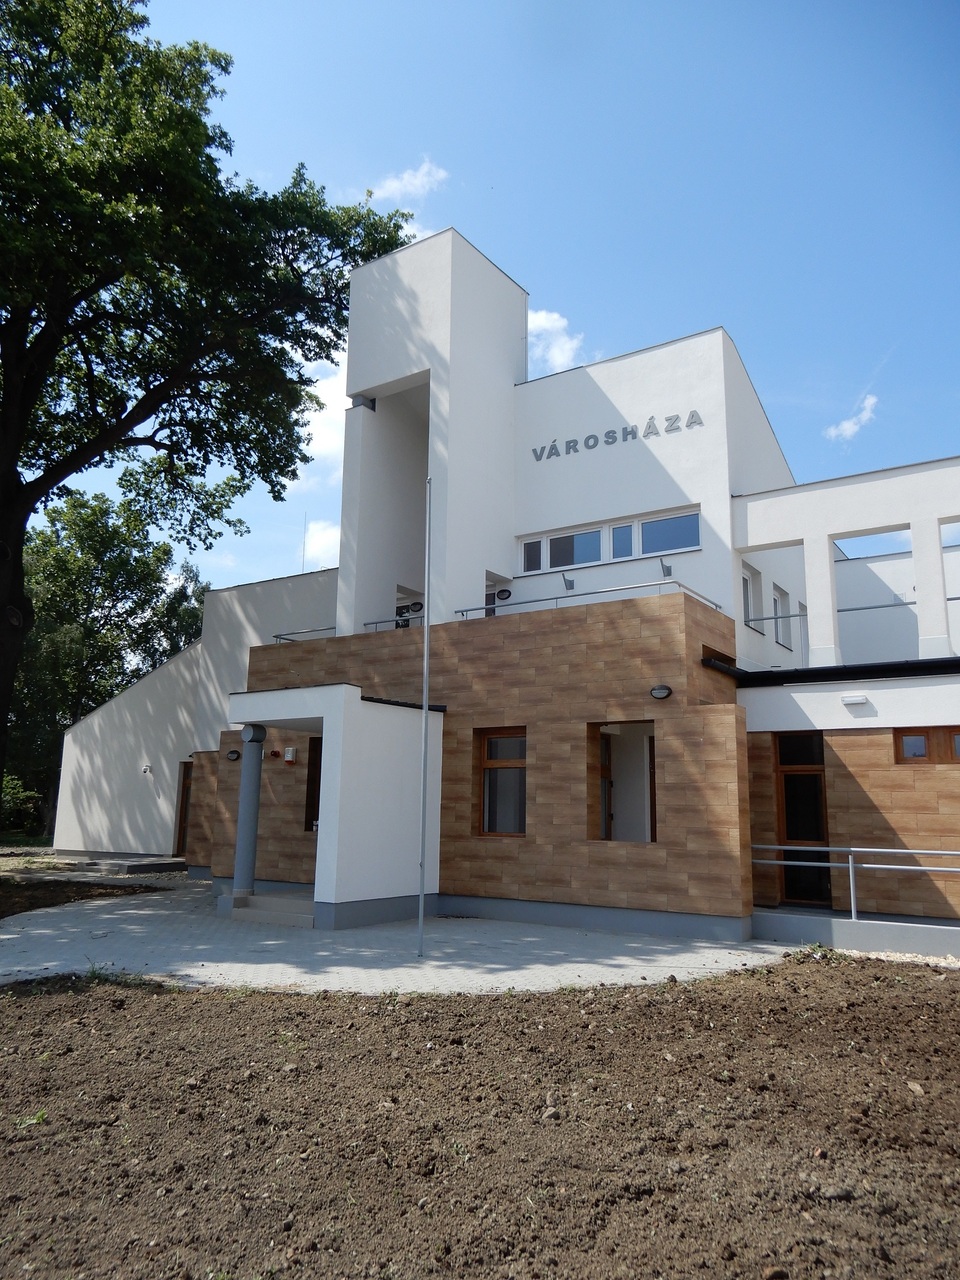 Dombrád új városháza, Tervező: Pláne és Plánum Kft, 2019., Képek forrása: Pláne és Plánum Kft